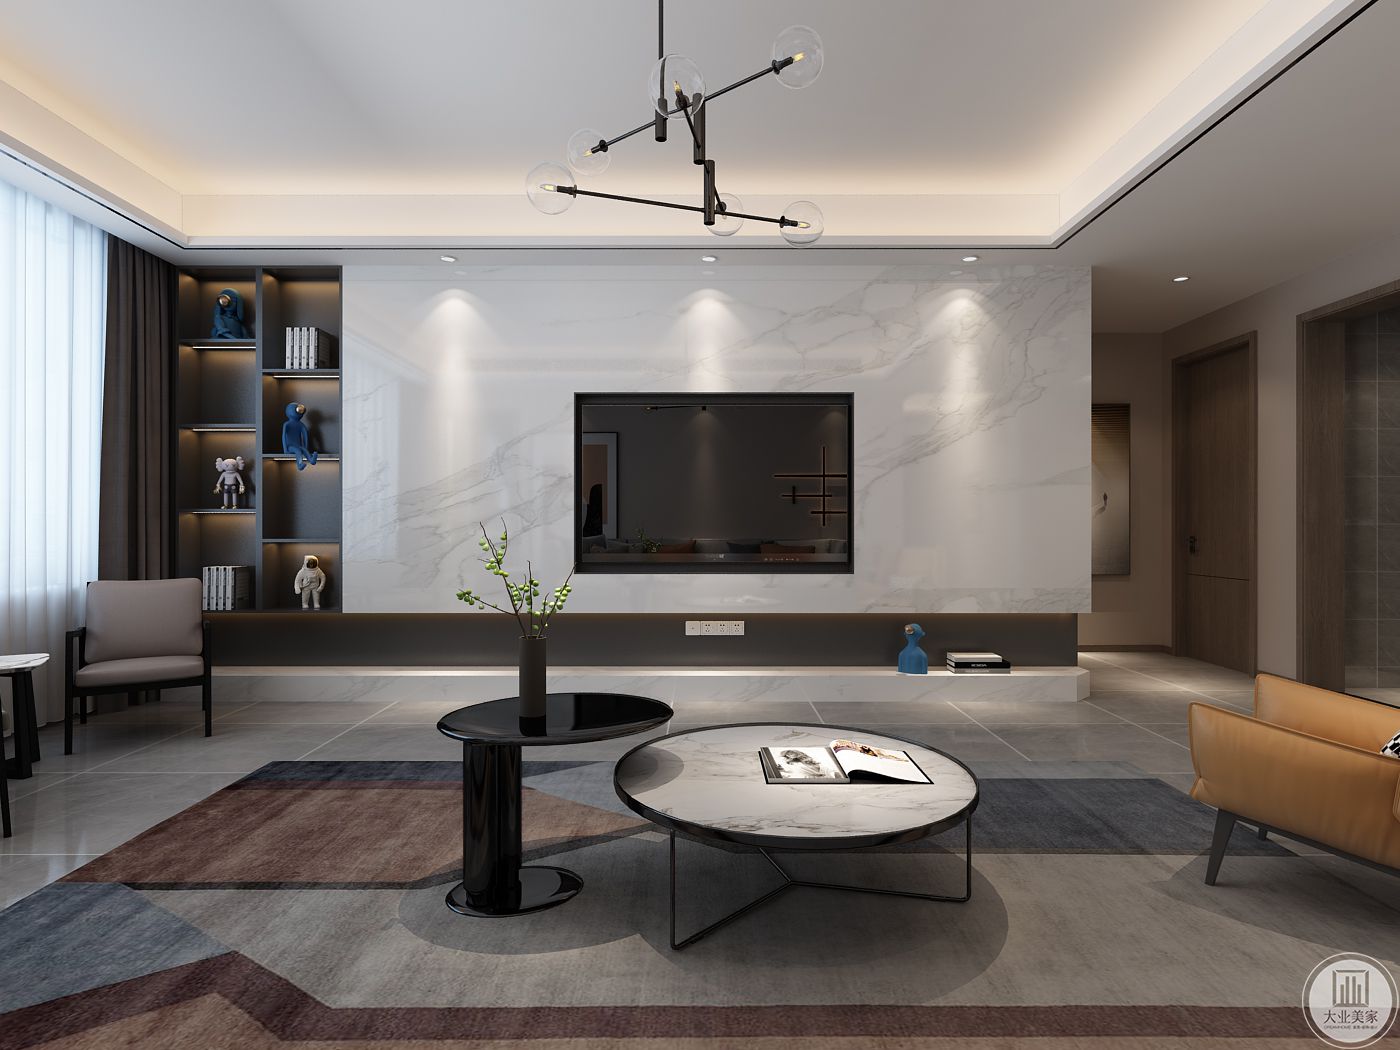 客厅是整体风格的亮点表现，在色彩的搭配上大气的石材背景搭配深色木饰面拉伸了整体空间感。开放装饰柜的运用使得整体空间更加的灵动舒适。